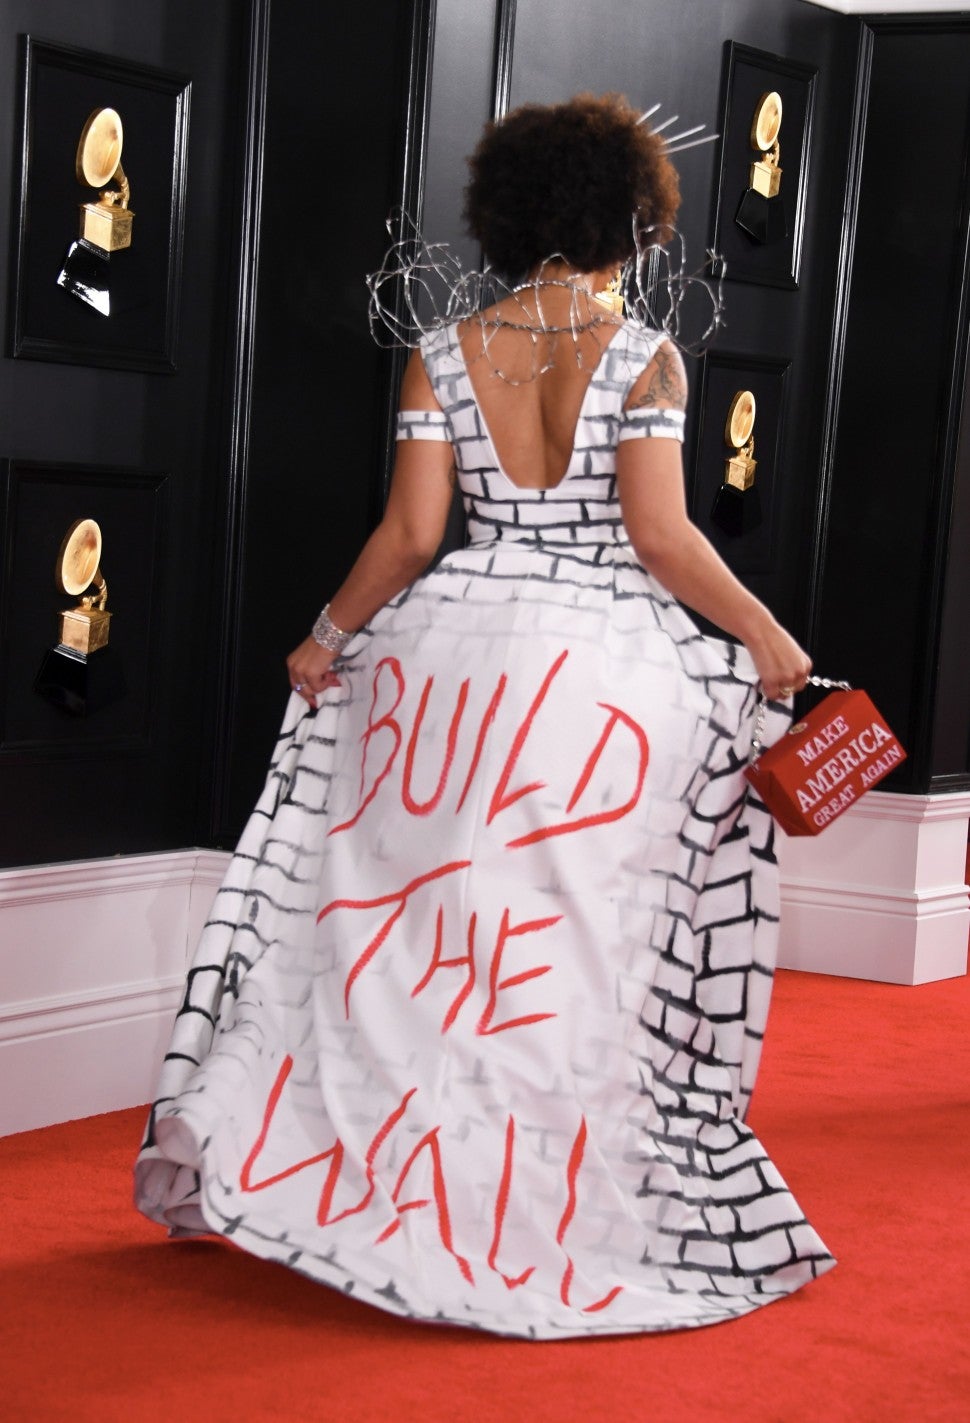 Princess Joy Villa in build the wall dress at Grammys